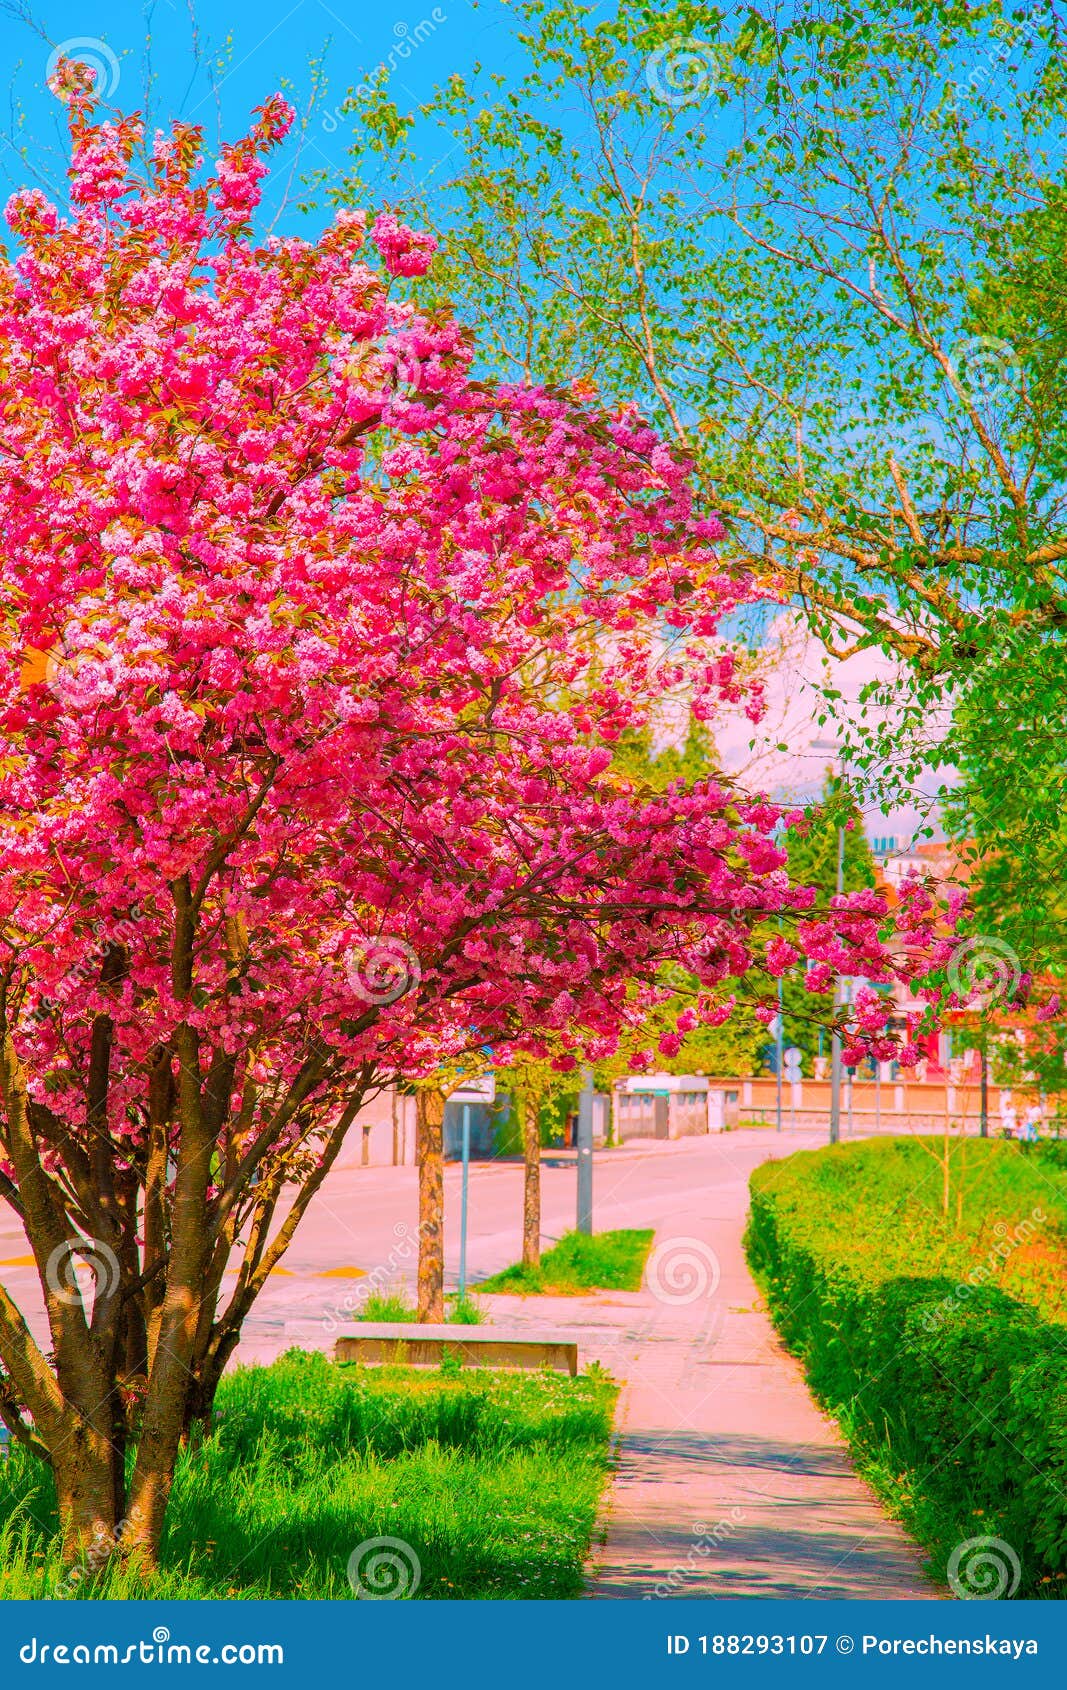 Fondo De Pantalla De Estética De Moda. Calle. árbol De Flores De Cerezo.  Imagen de archivo - Imagen de hermoso, flora: 188293107